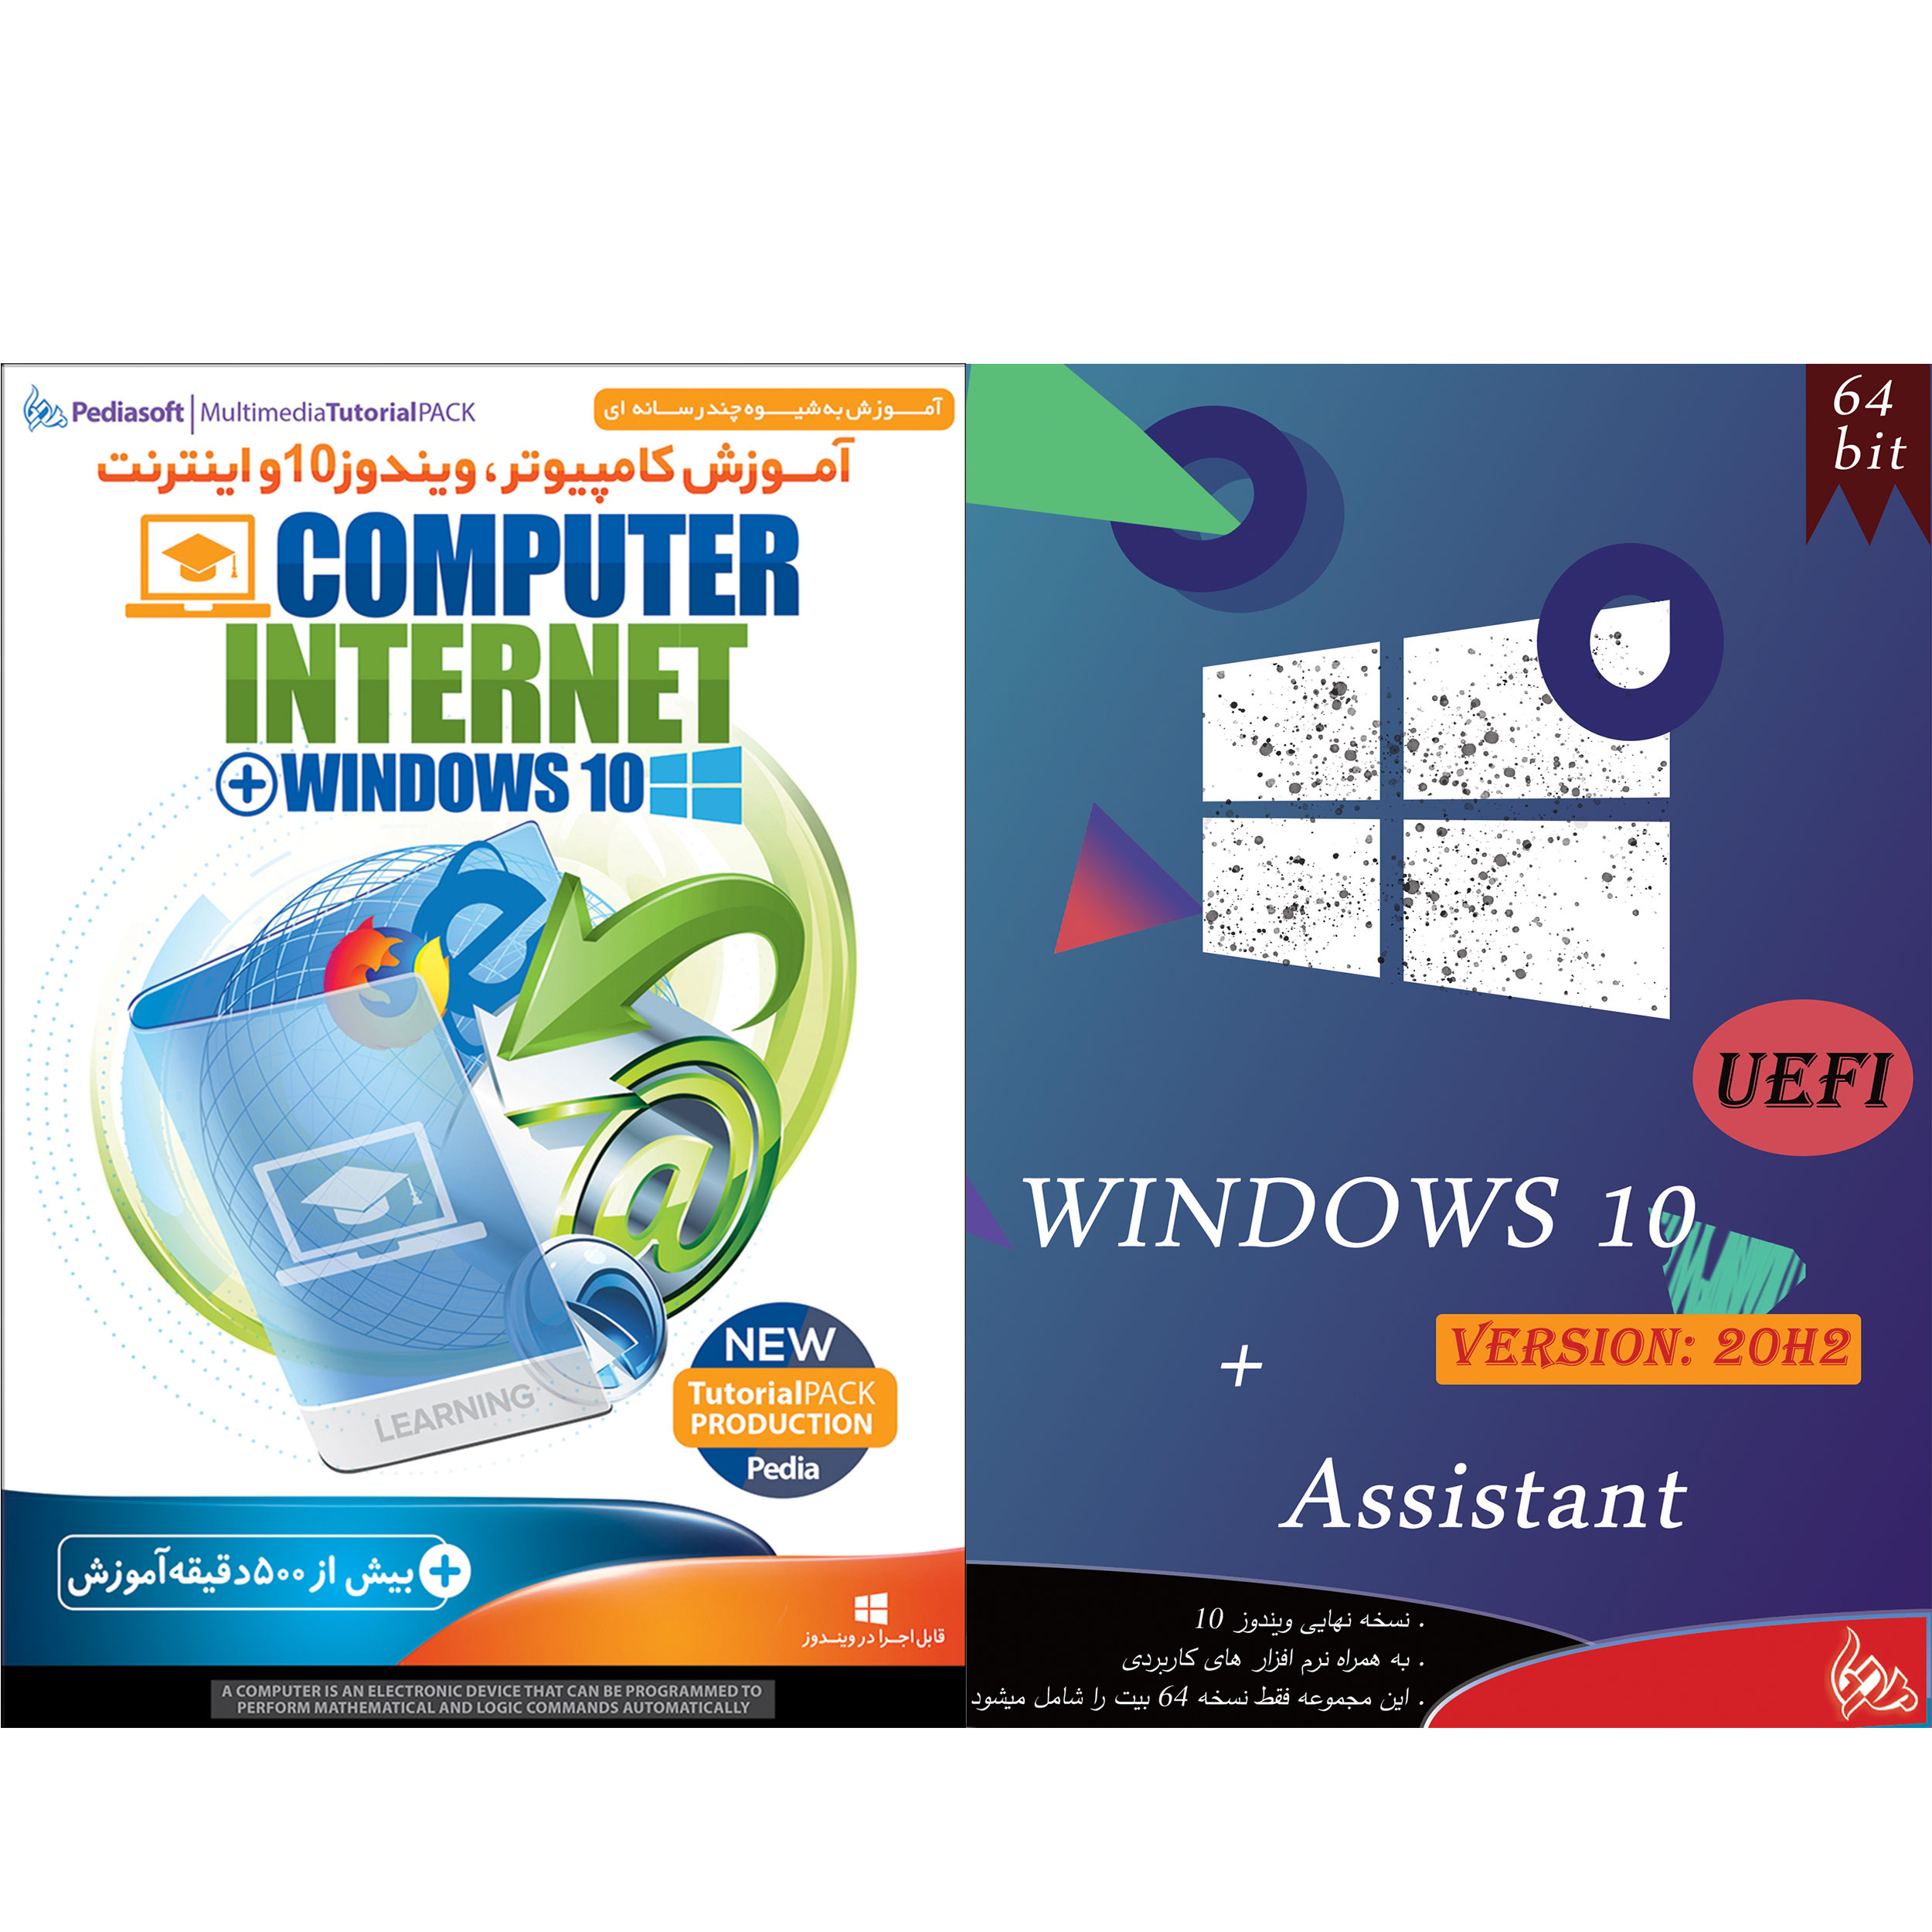 نرم افزار آموزش کامپیوتر ، ویندوز 10 و اینترنت نشر پدیا سافت به همراه سیستم عامل WINDOWS 10 + Assistant نشر پدیا 